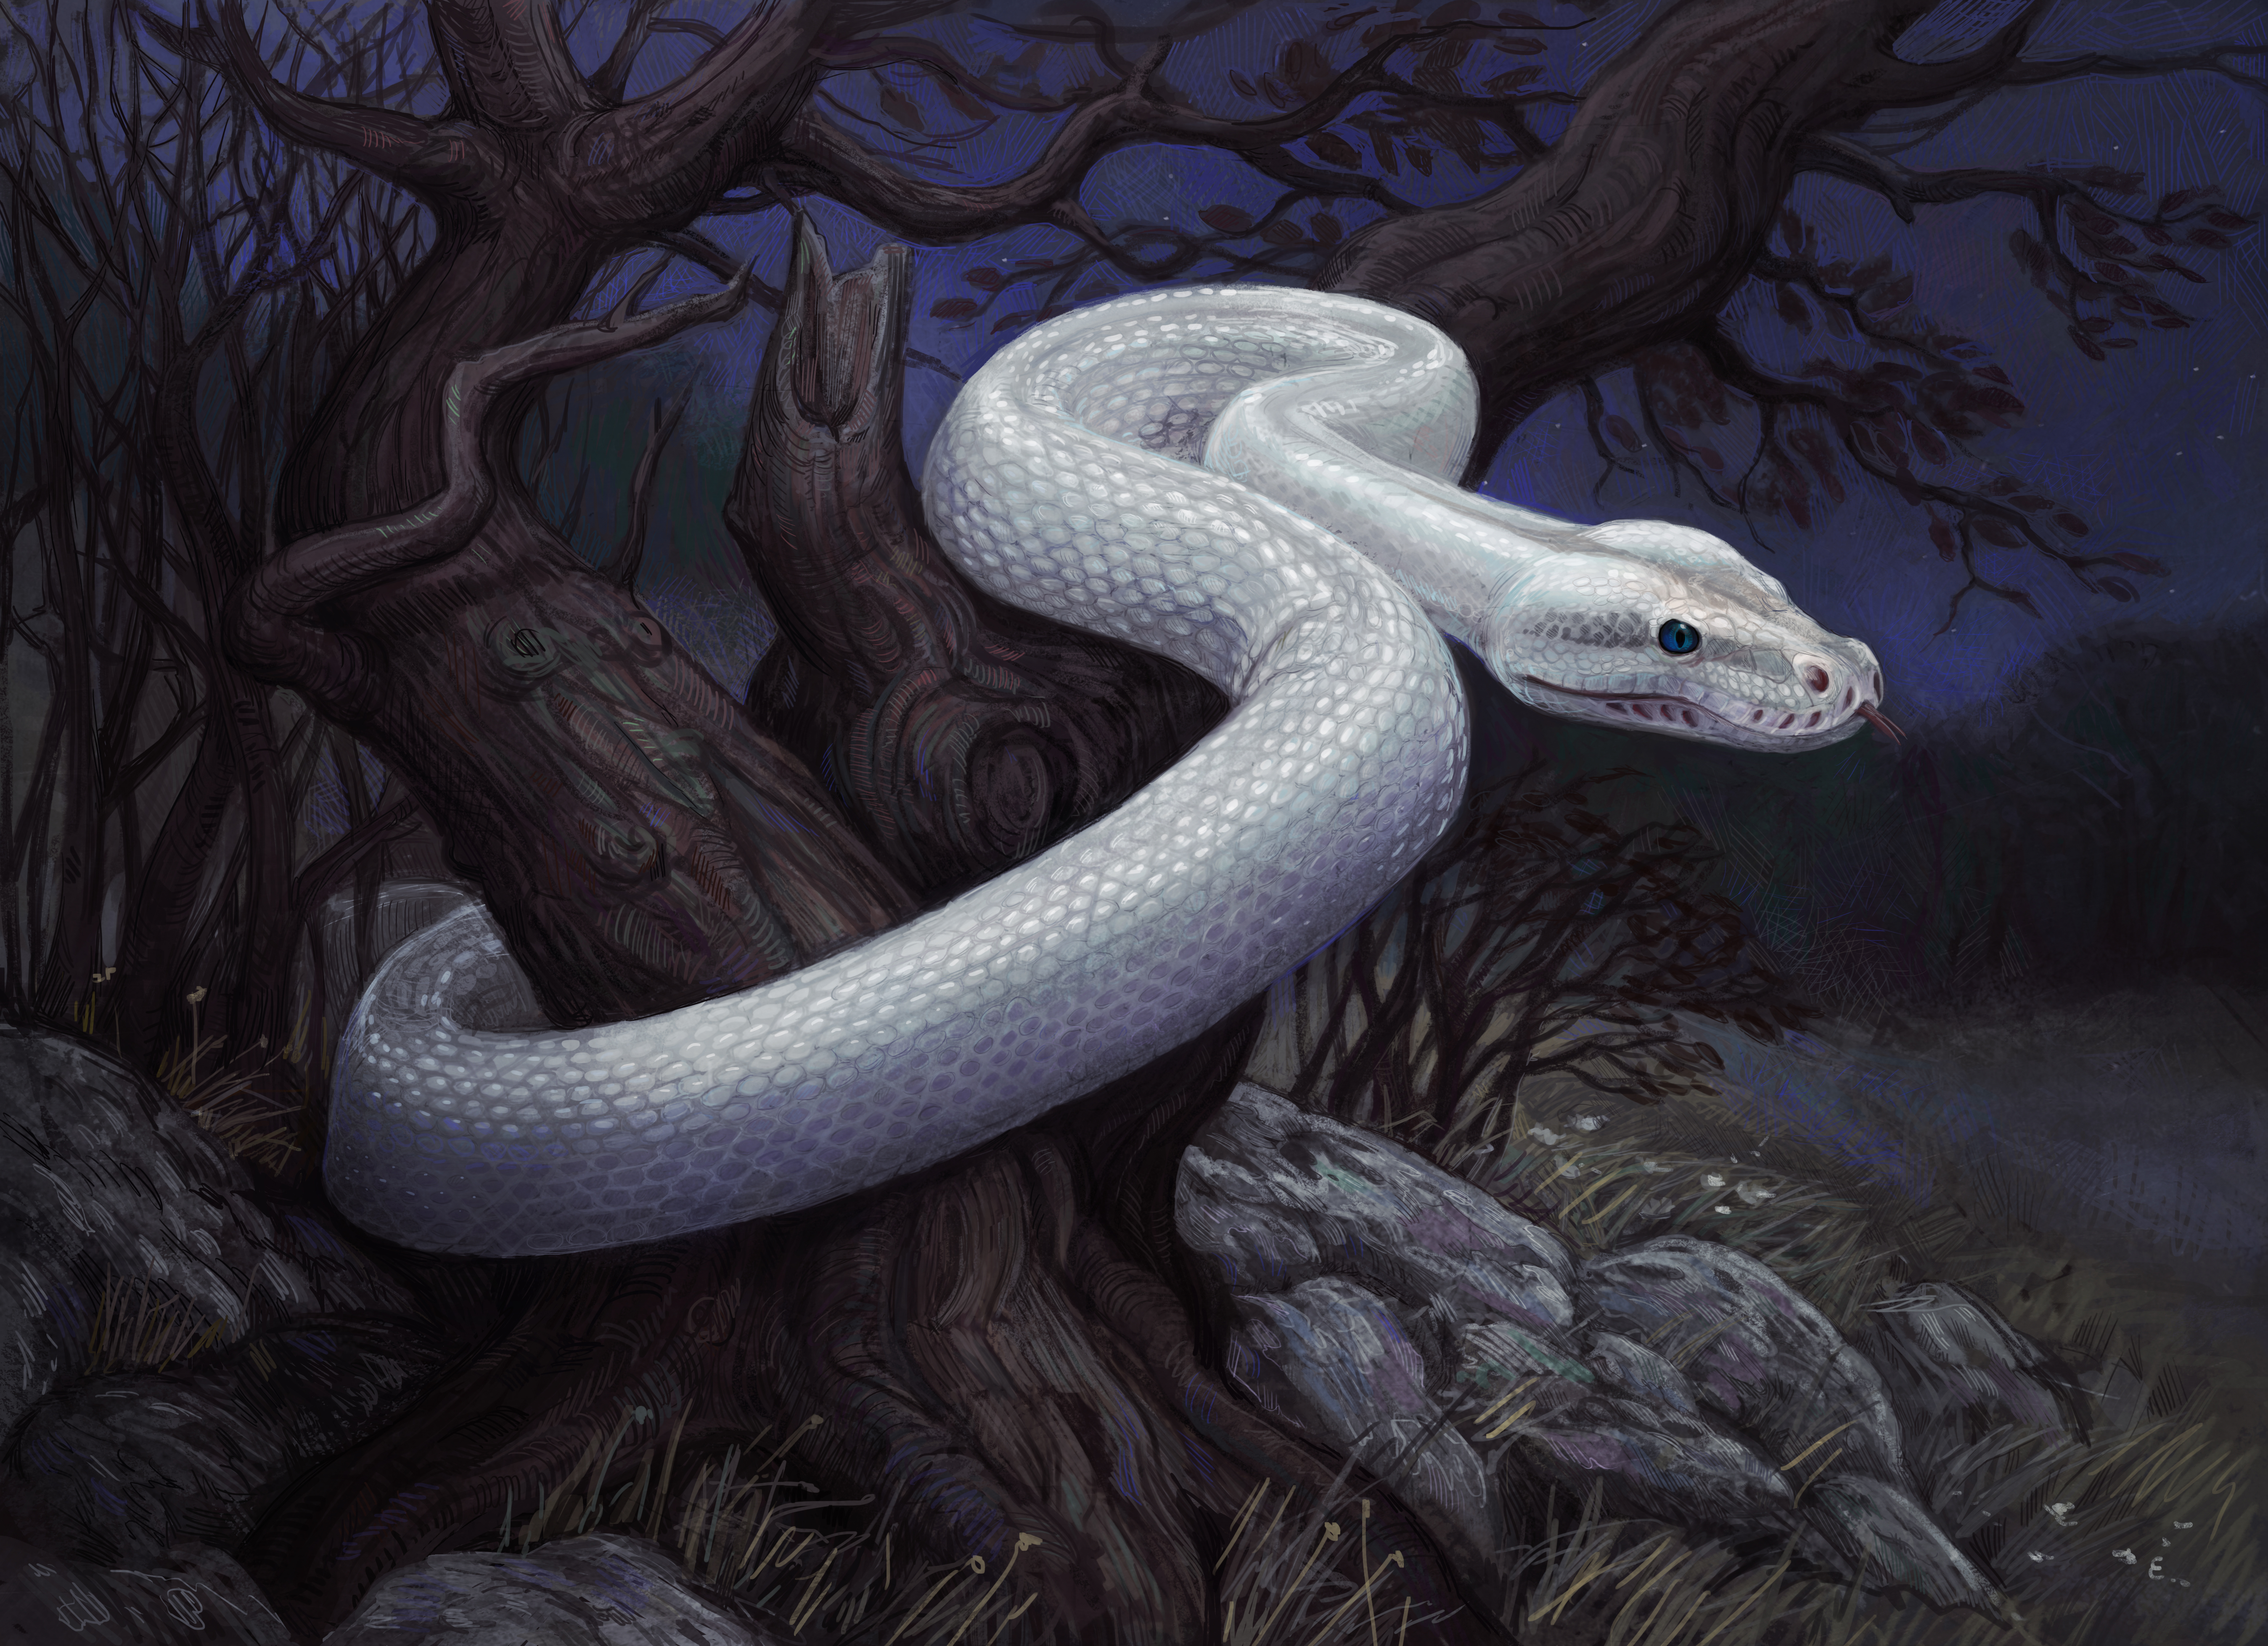 Ютуб змеиный. Королевская Кобра Нагайна. Фамильяр белая змея. Змеи питон арт. Королевская Кобра альбинос.